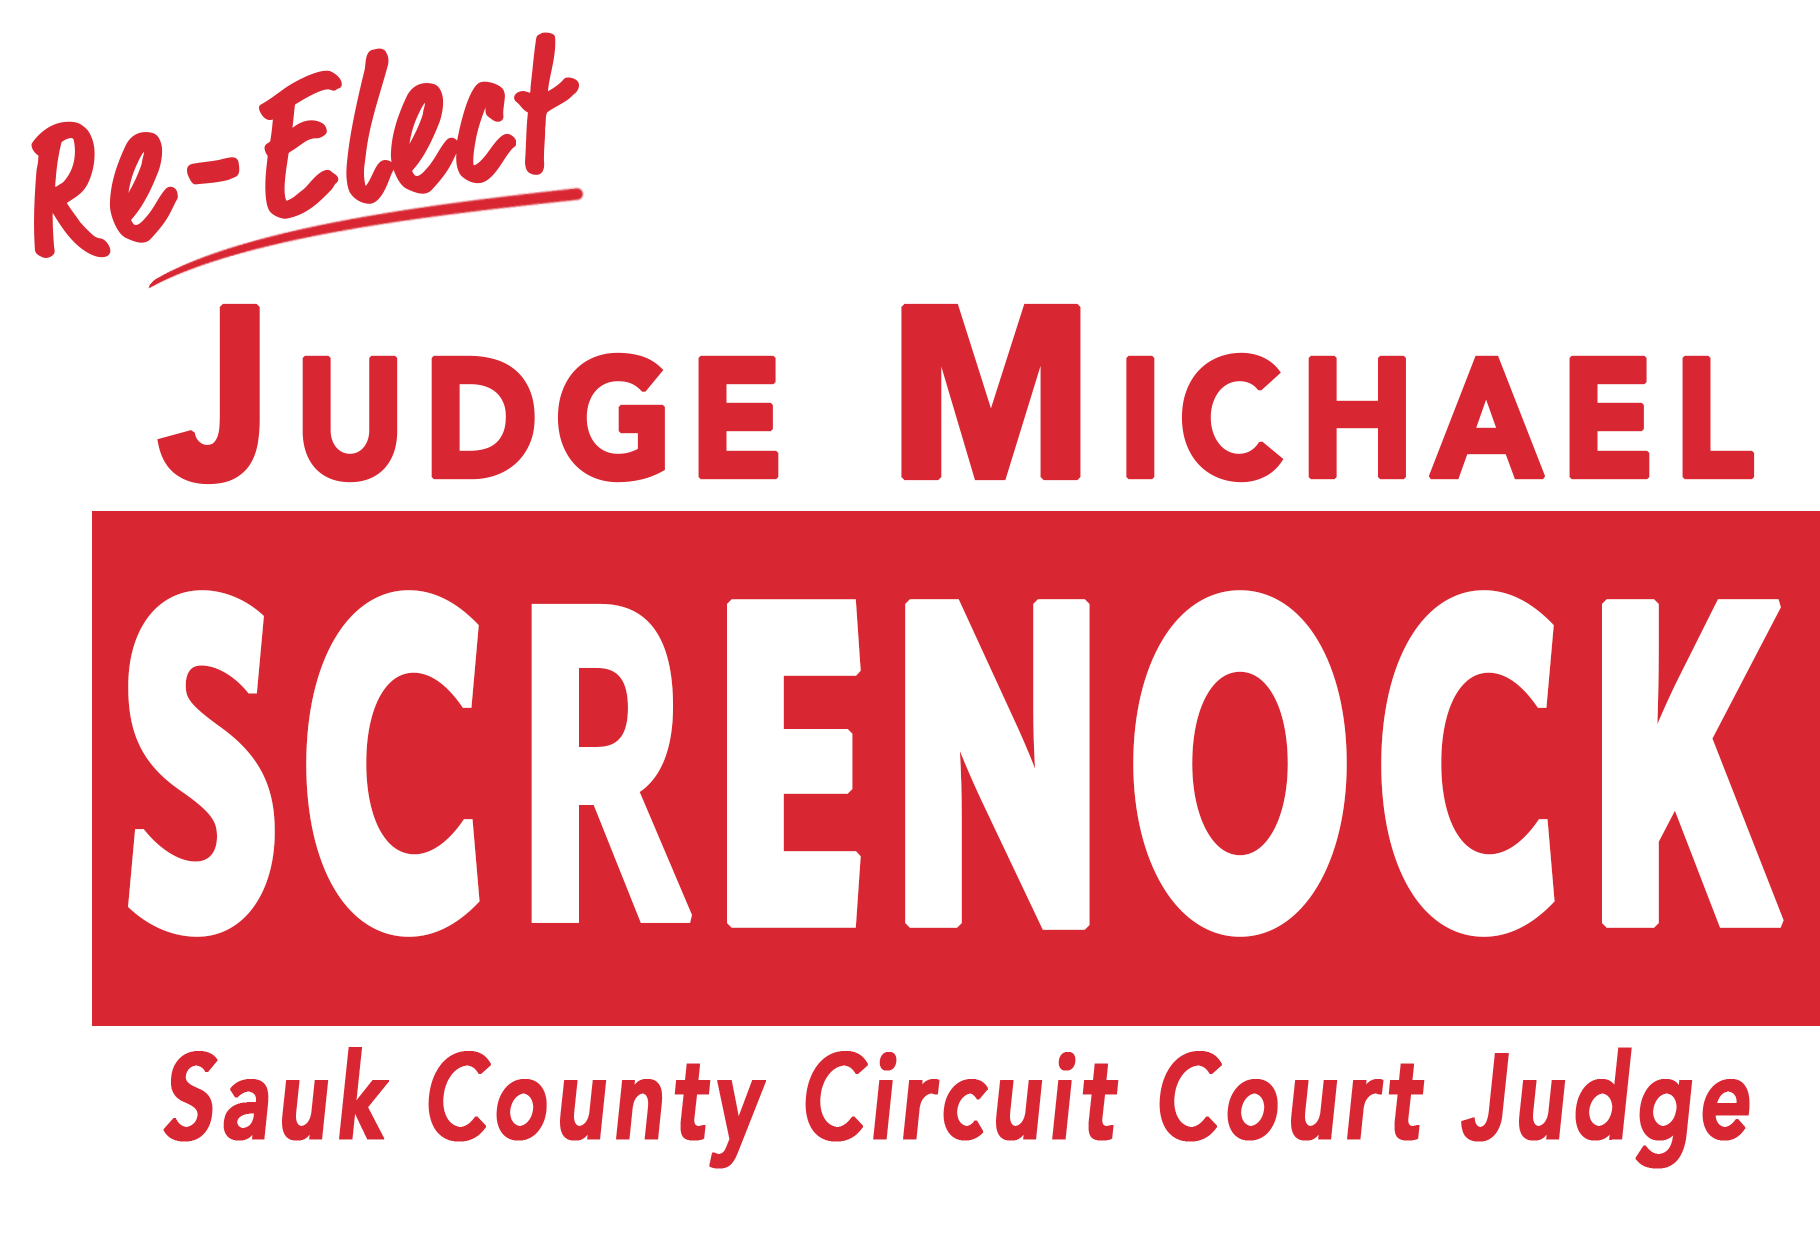 Judge Michael Screnock